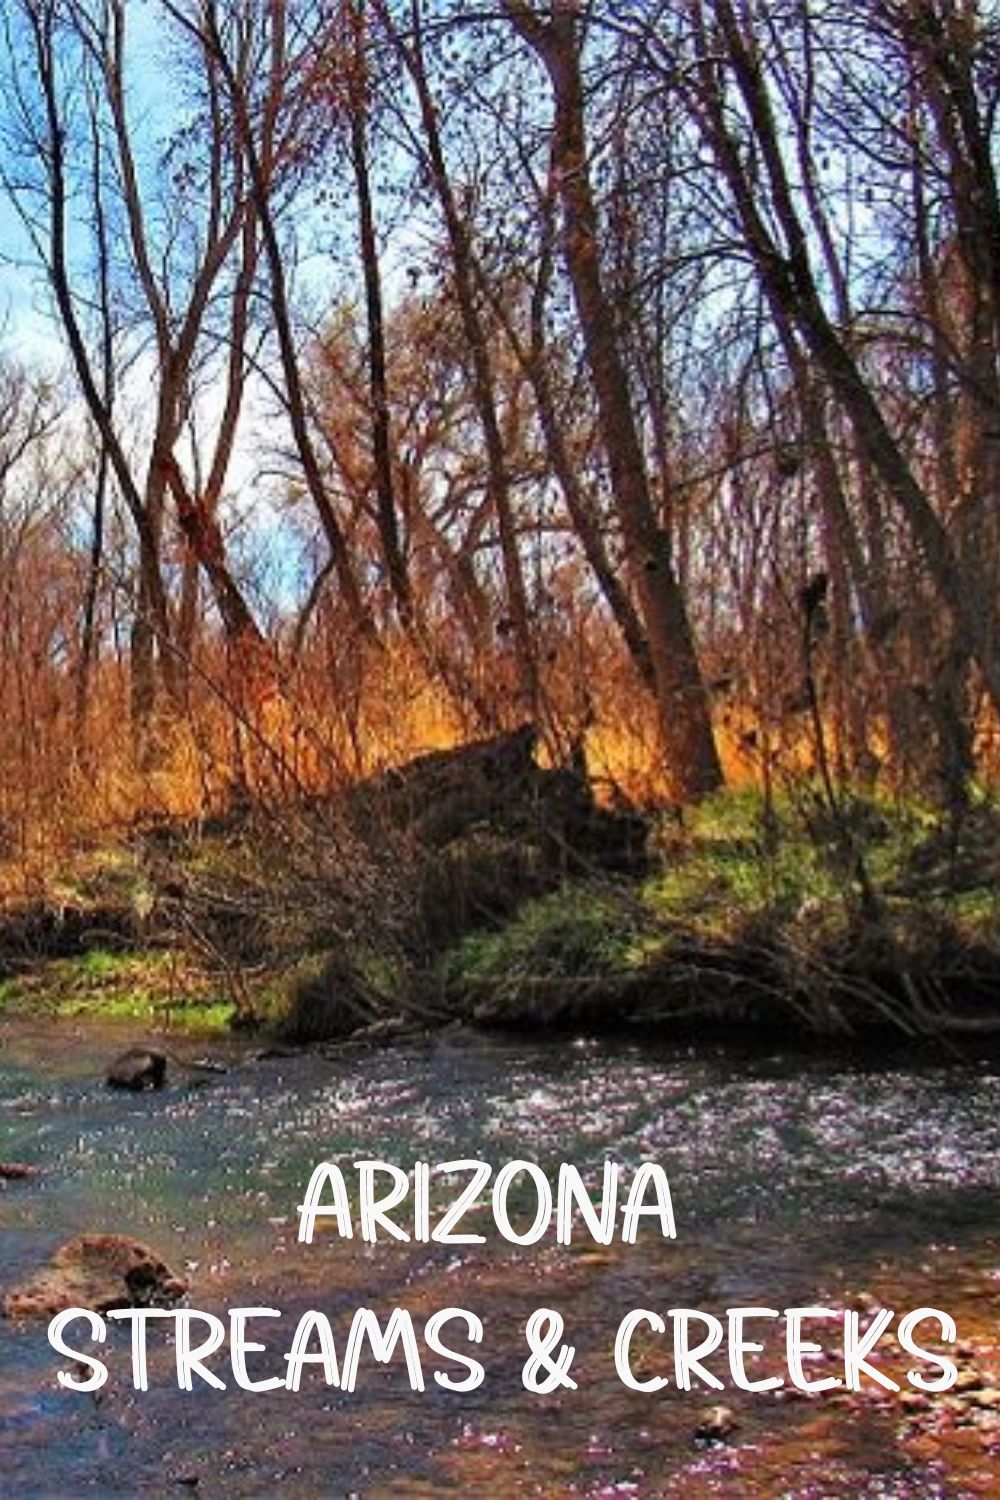 Arizona streams and creeks.